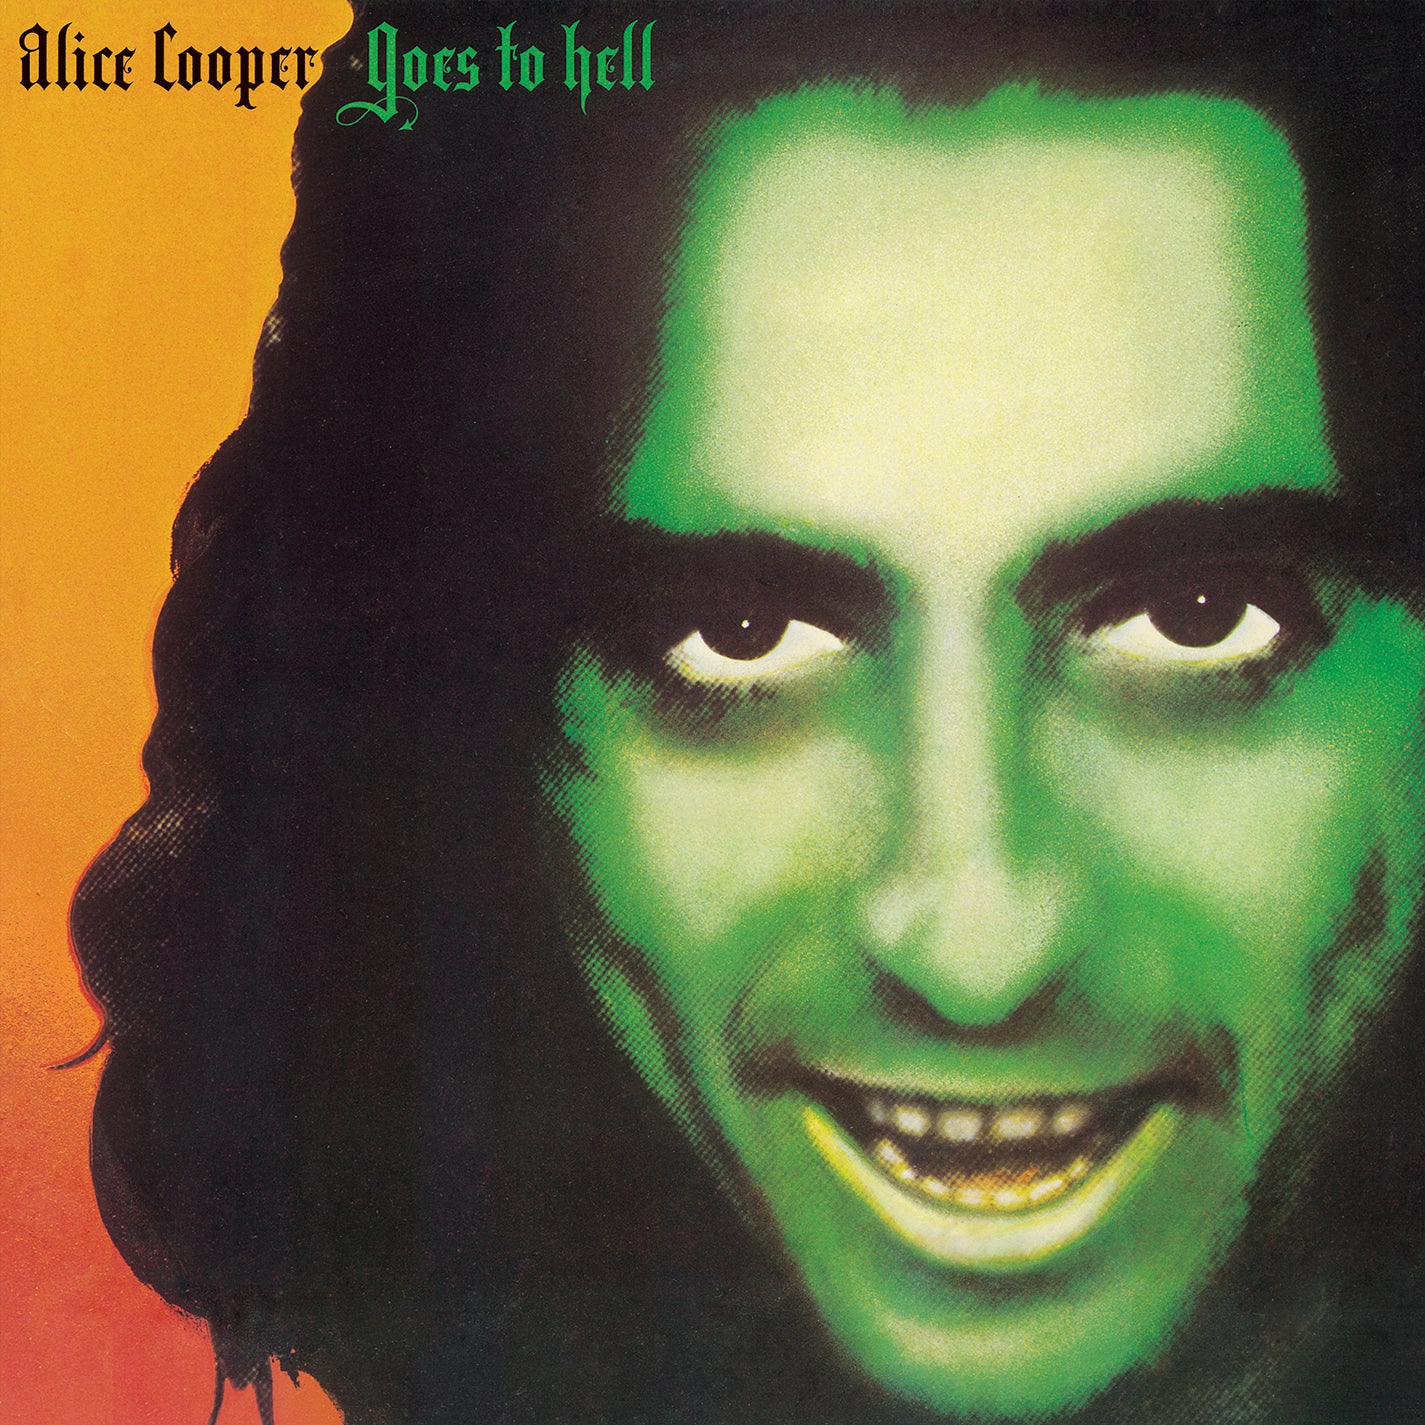 Alice Cooper - Alice Cooper Goes To Hell [Orange LP] [Rocktober 2018 Exclusive]